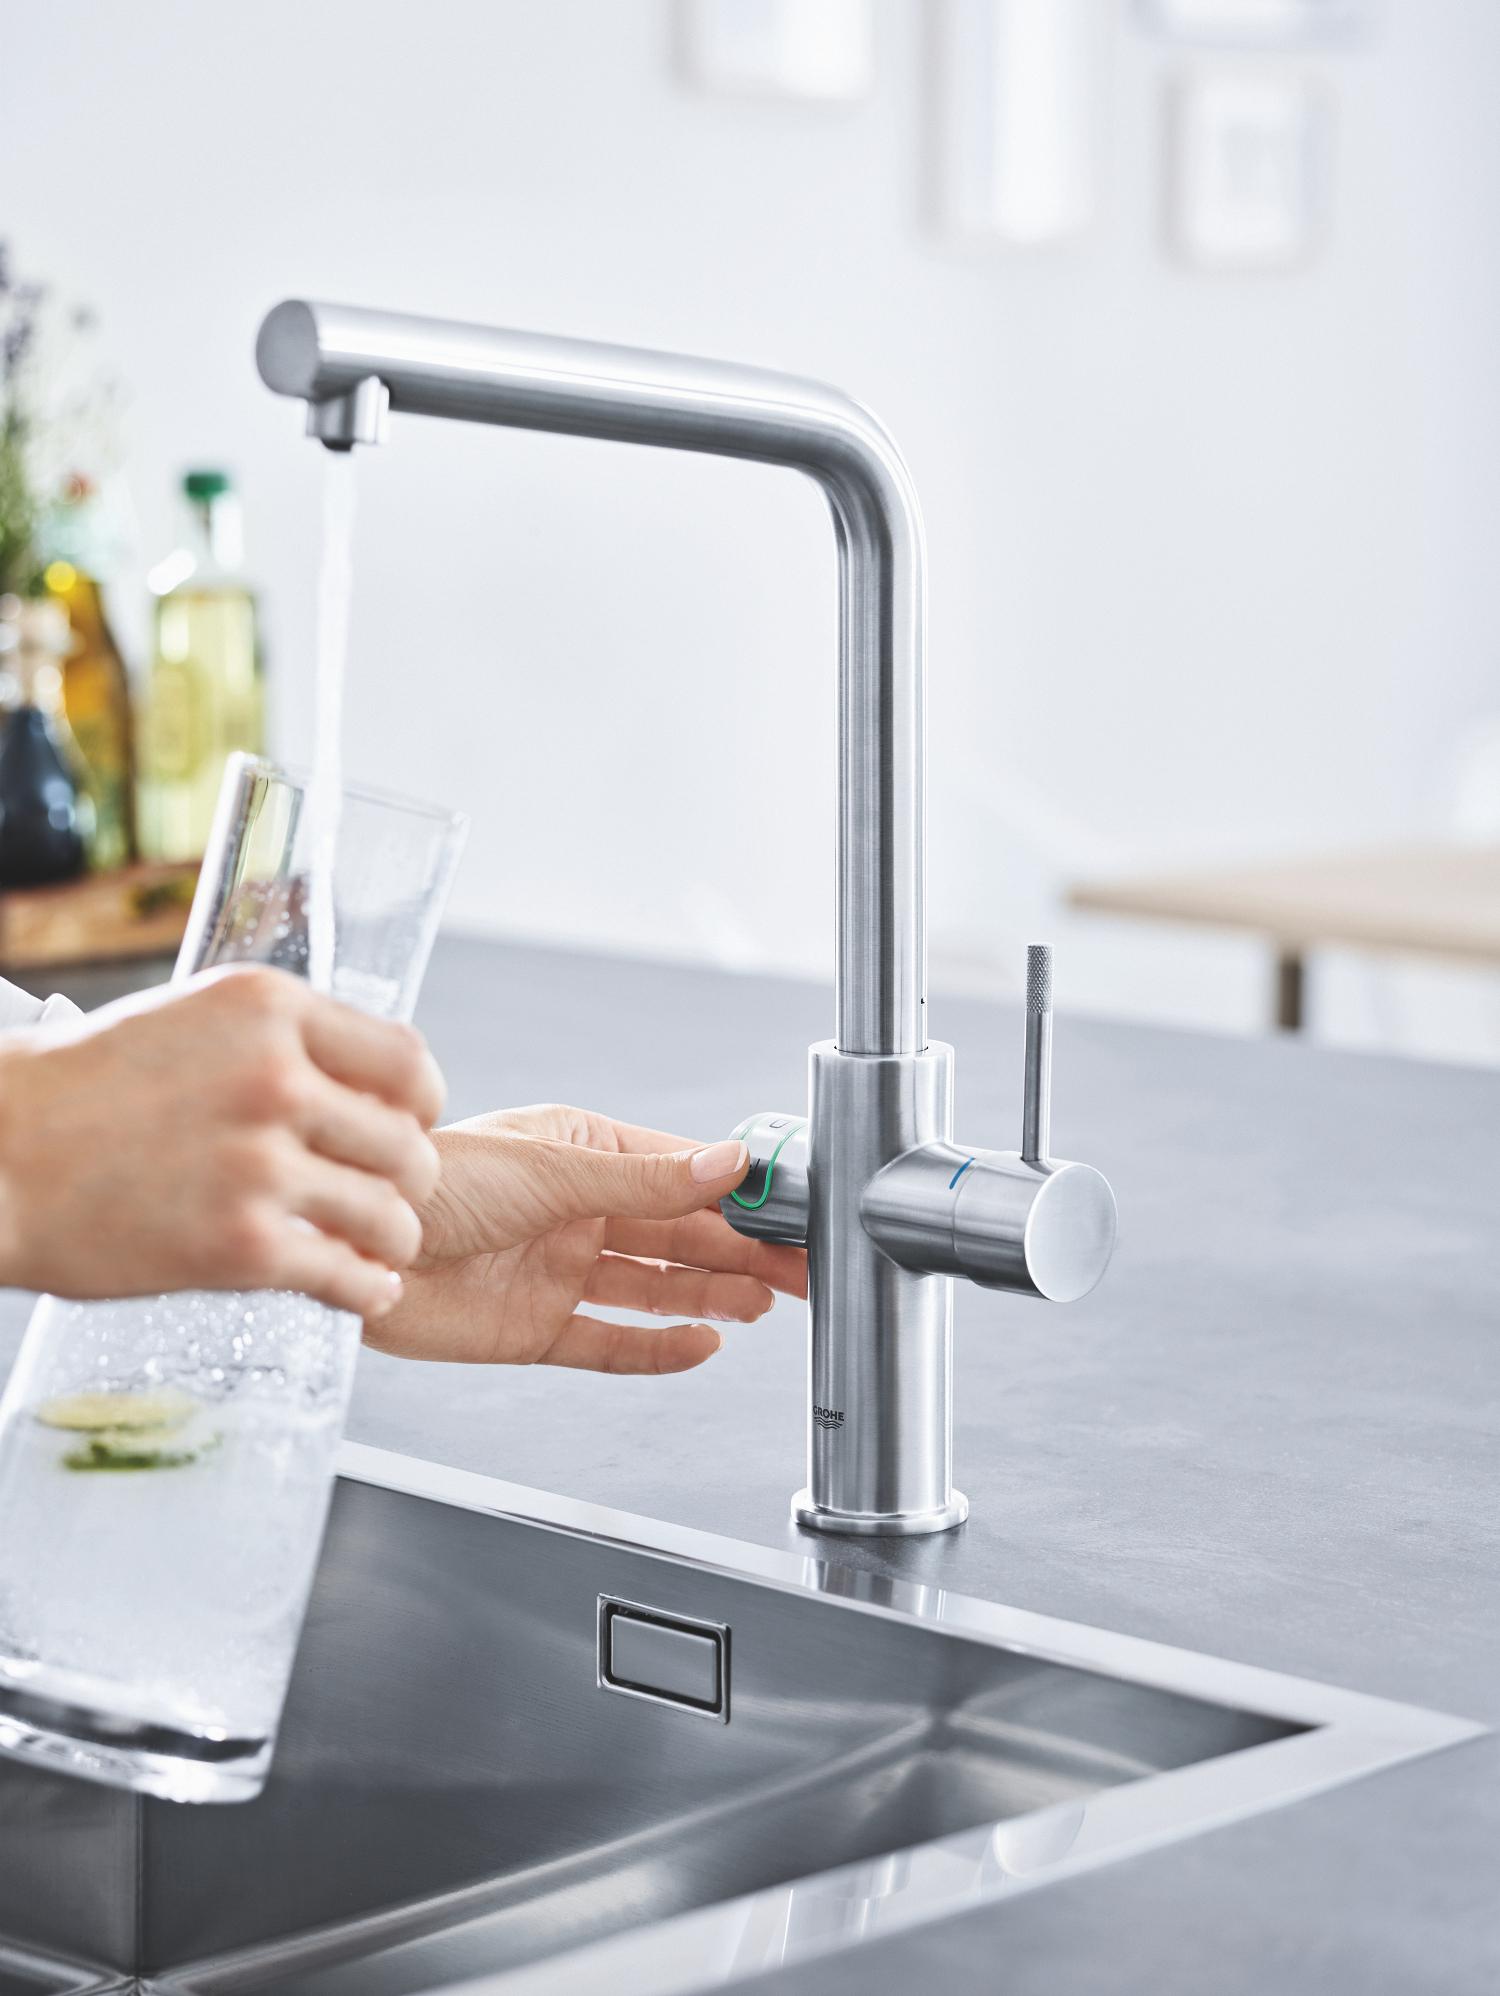 Perfekt gekühltes Wasser aus der Leitung #küche #armatur #grohebluehome